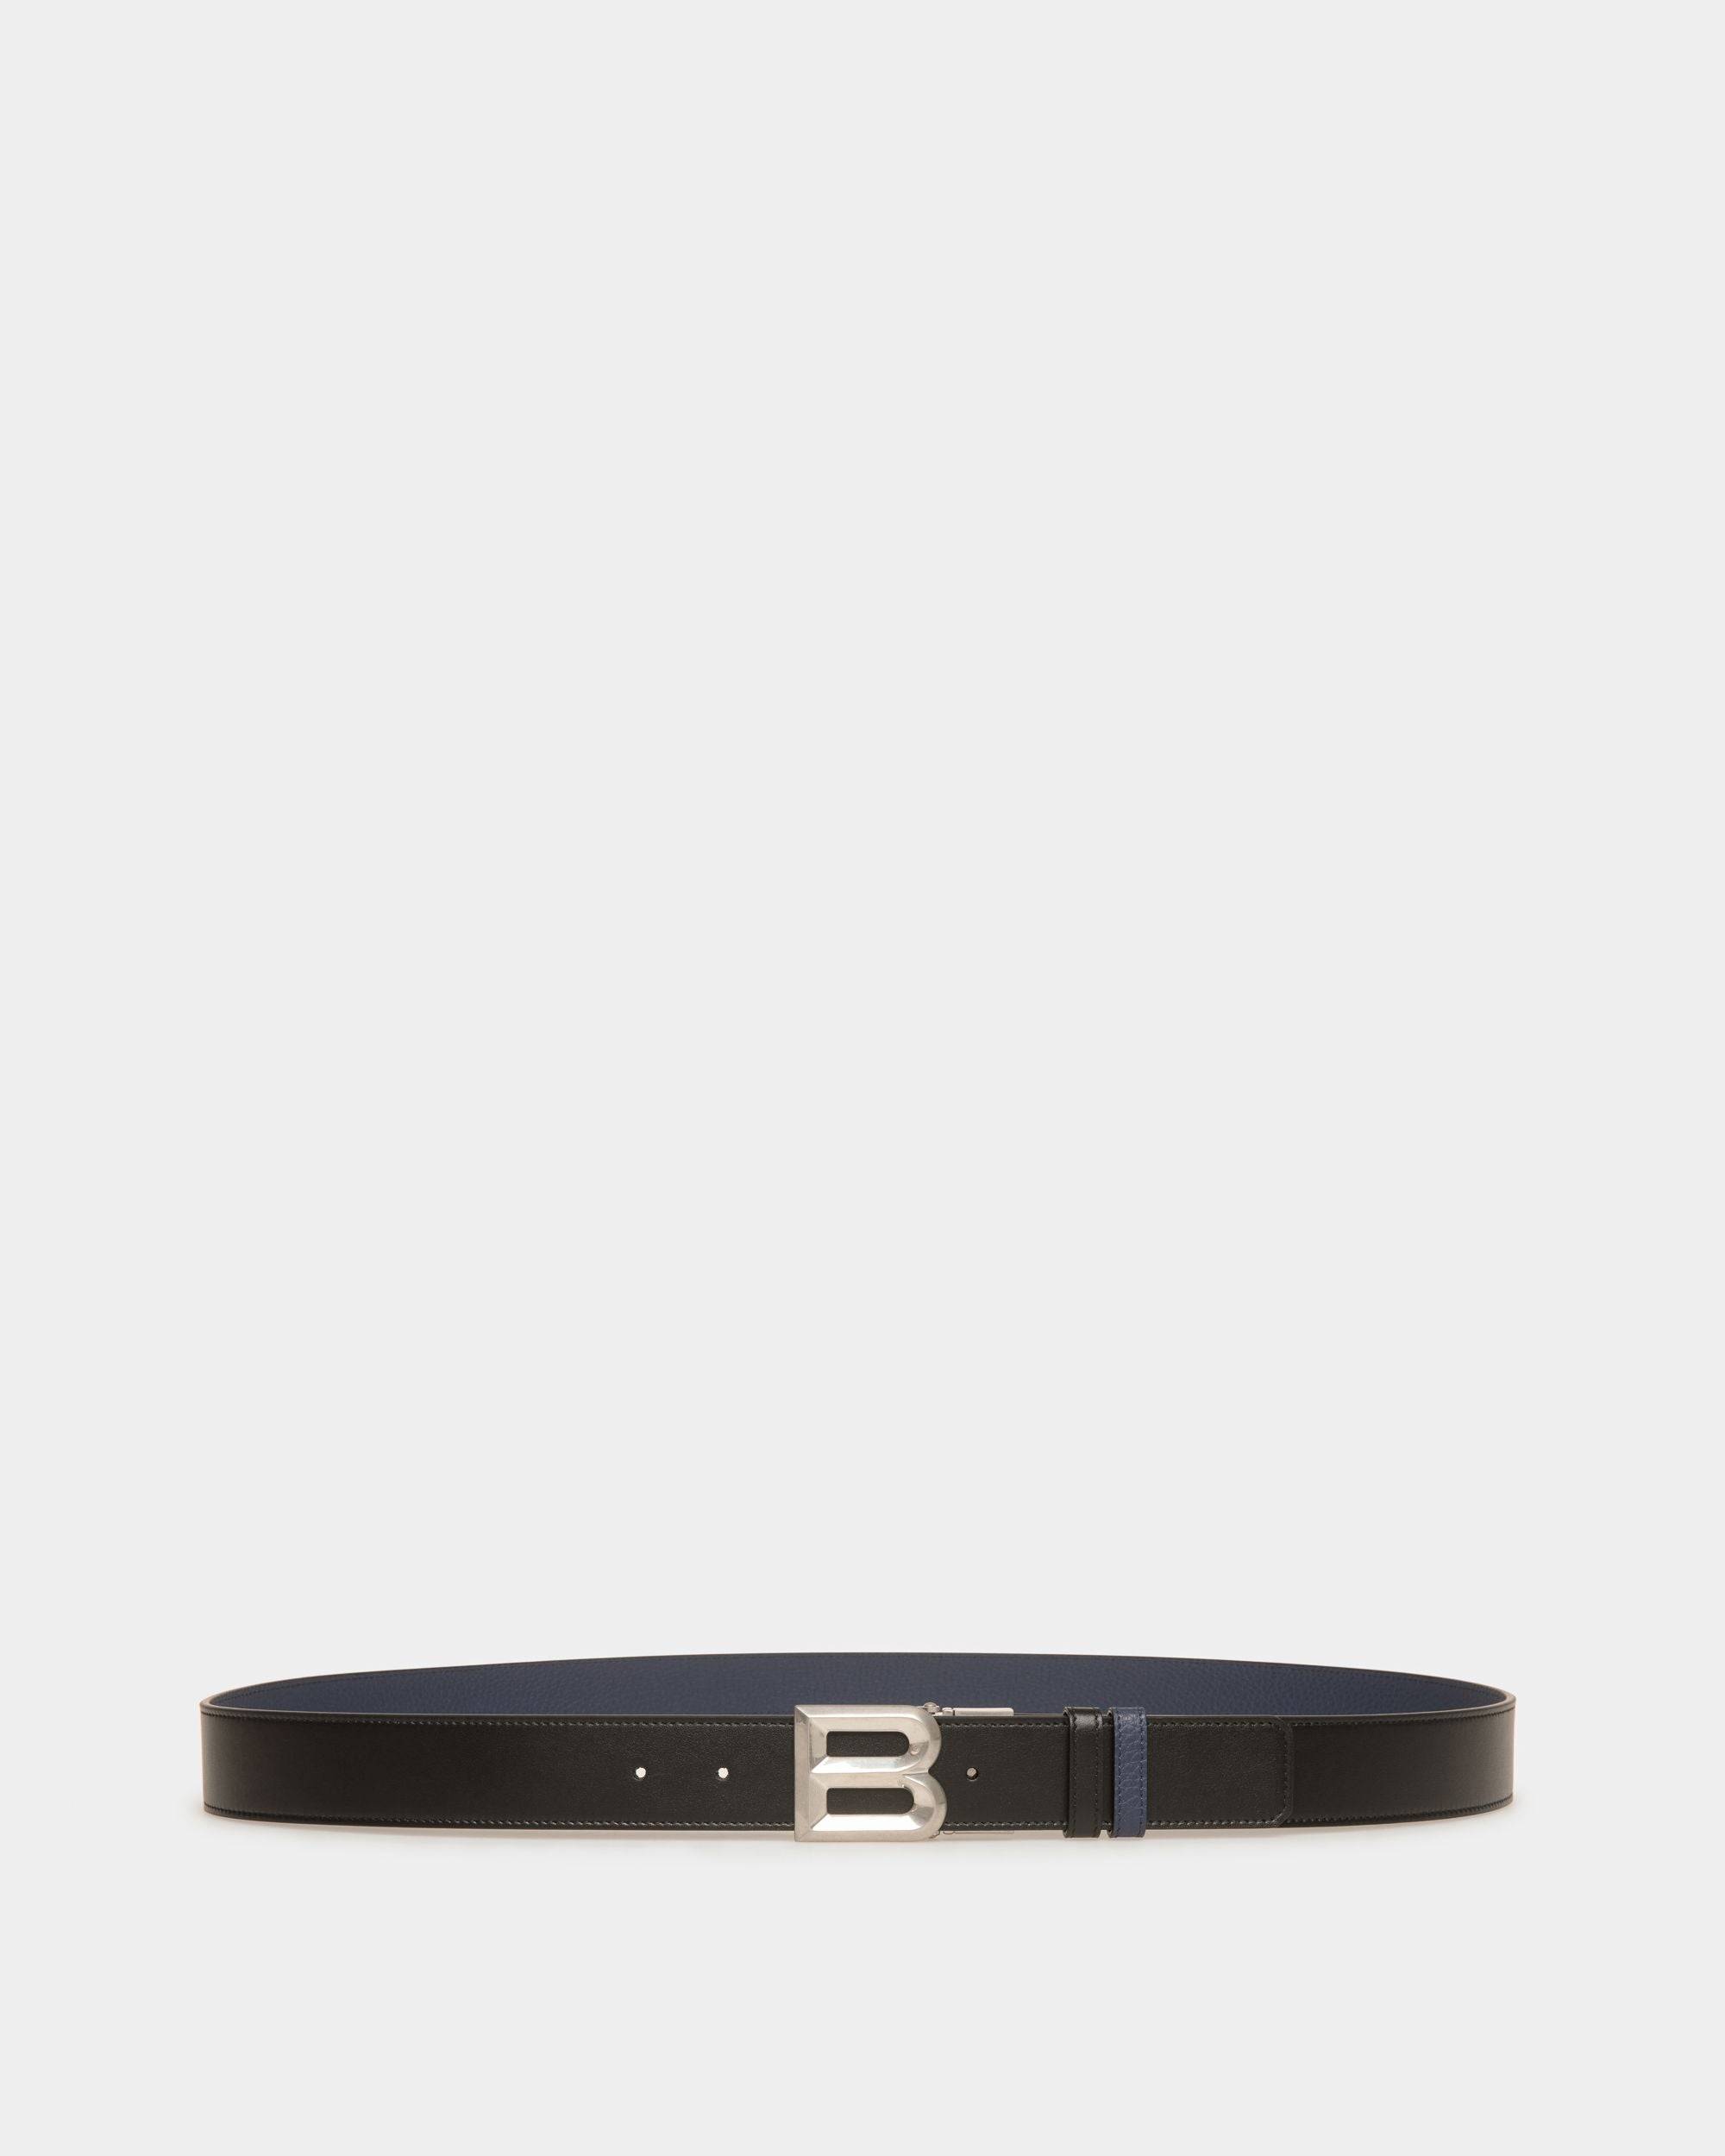 B Bold 35 mm | Verstellbarer Herren-Wendegürtel aus Leder in Schwarz und Marineblau | Bally | Still Life Vorderseite